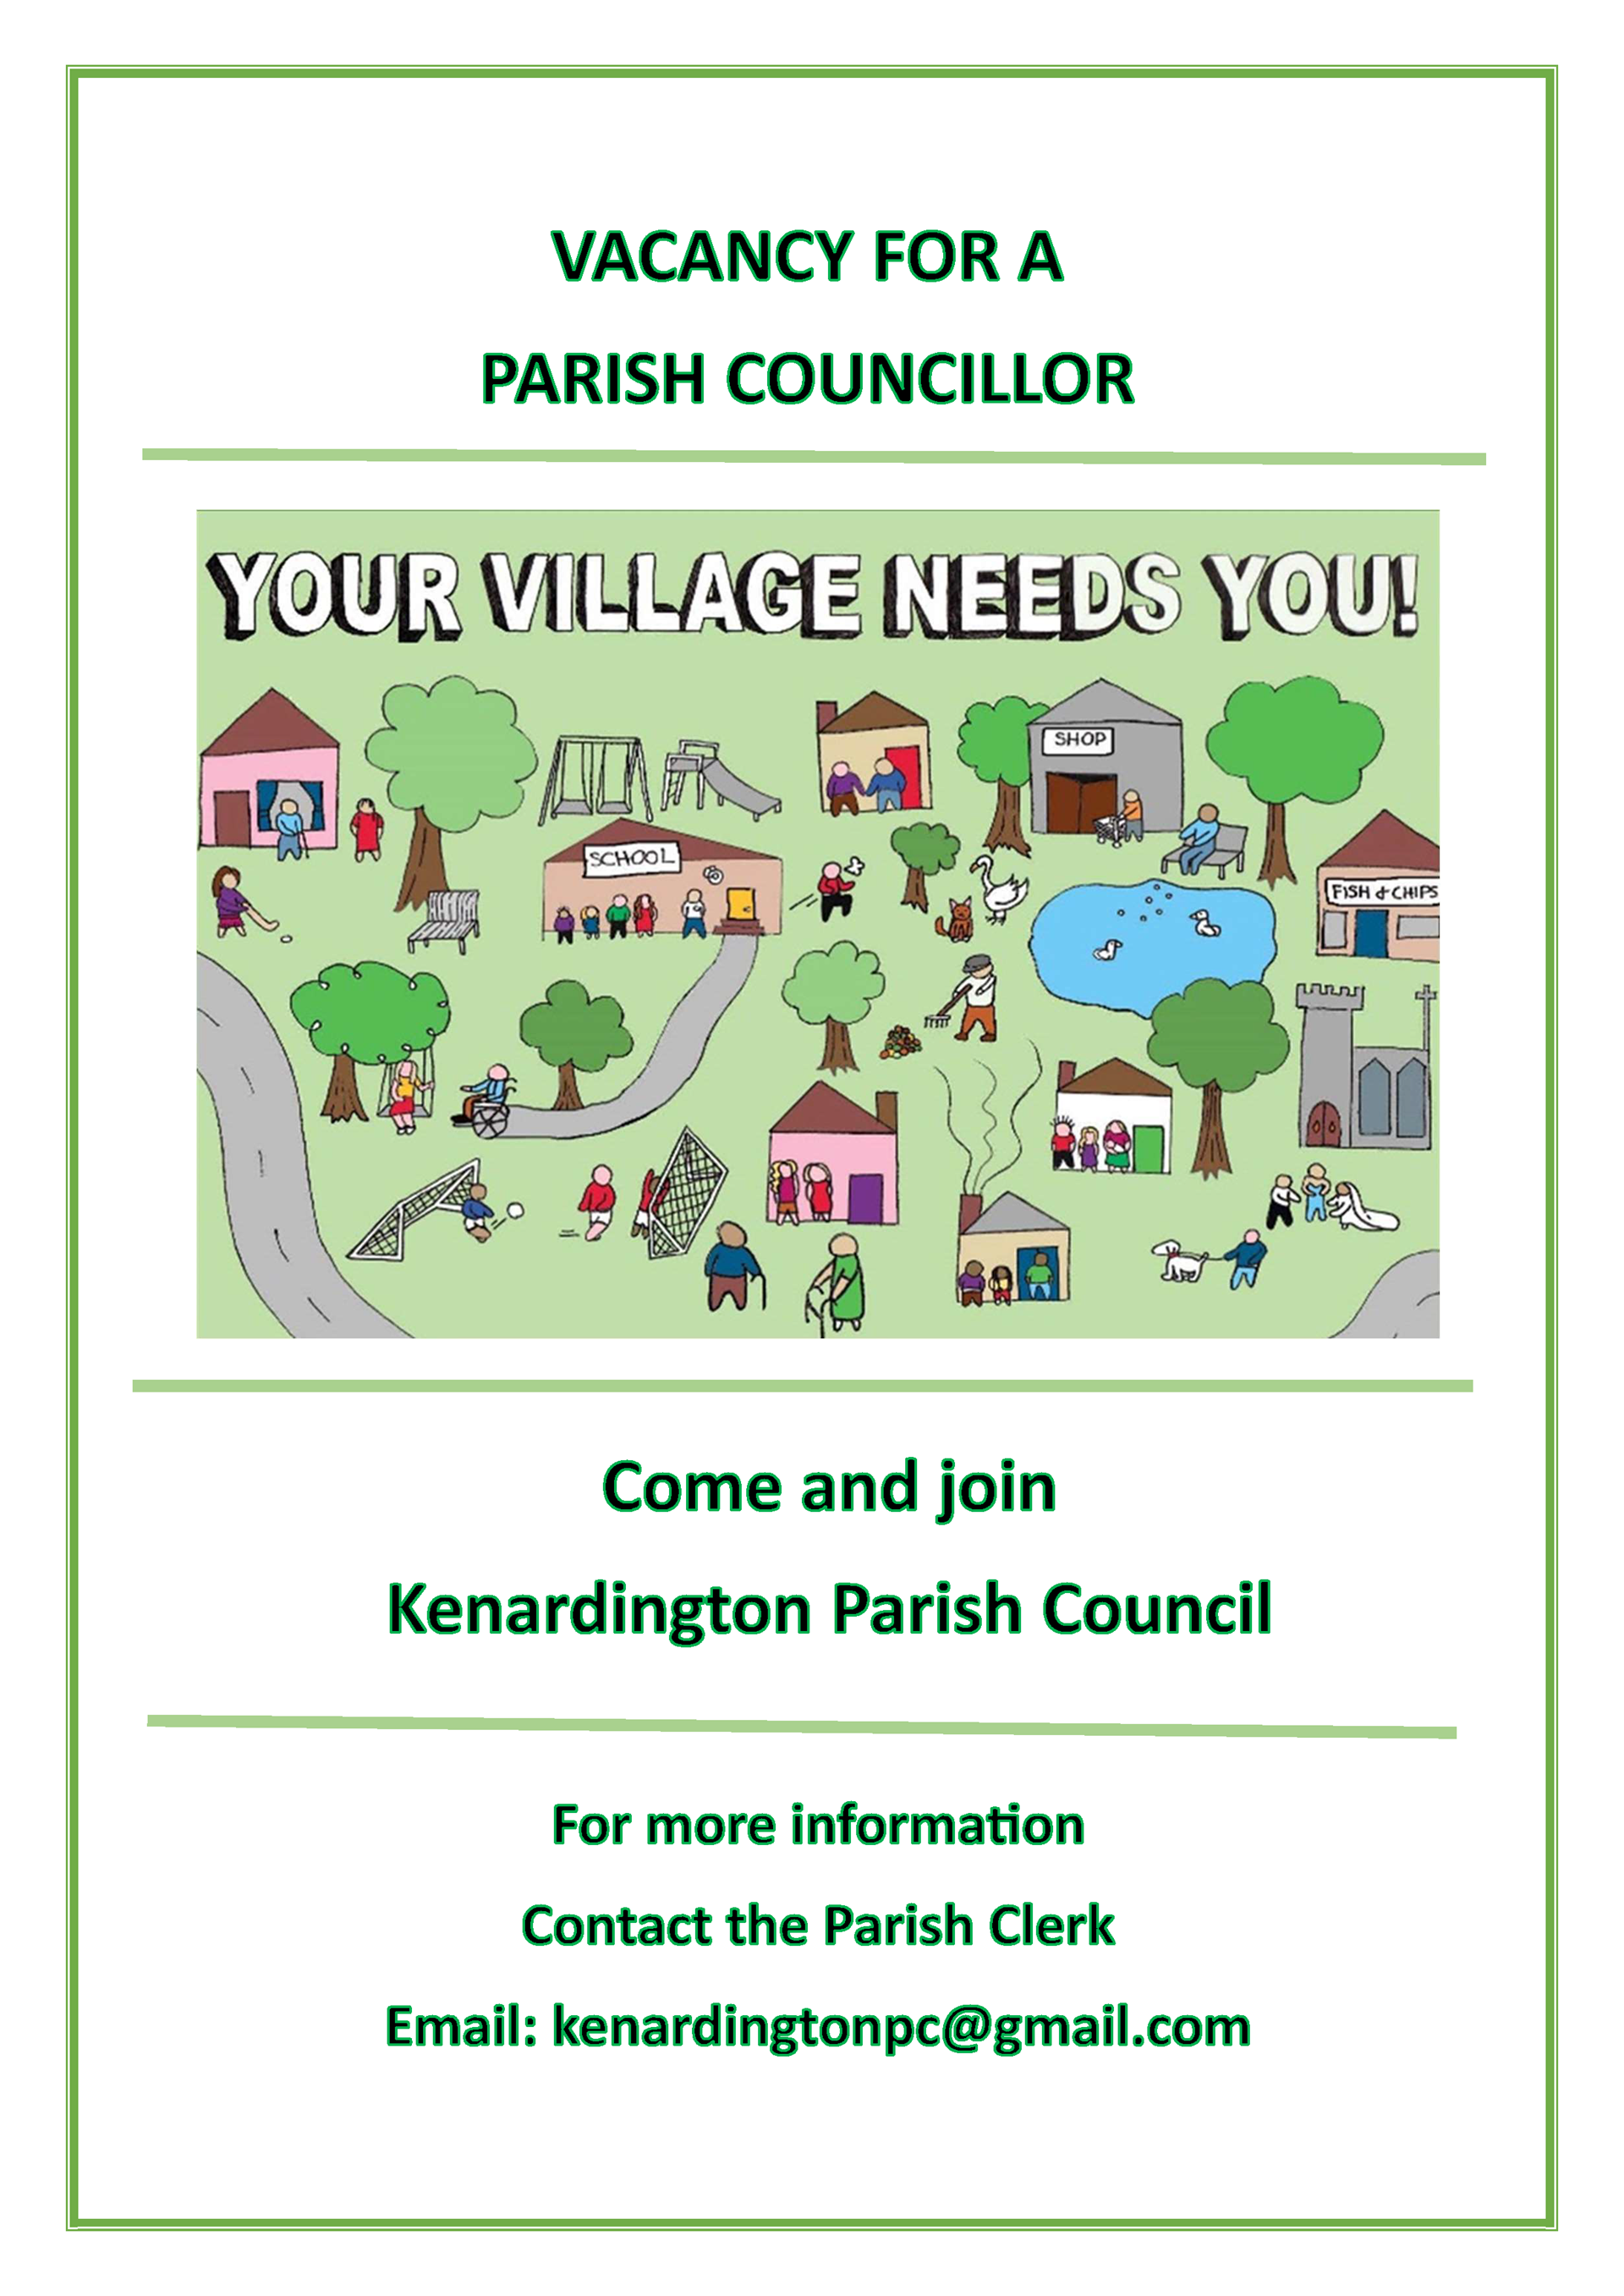 Kenardington Parish Council